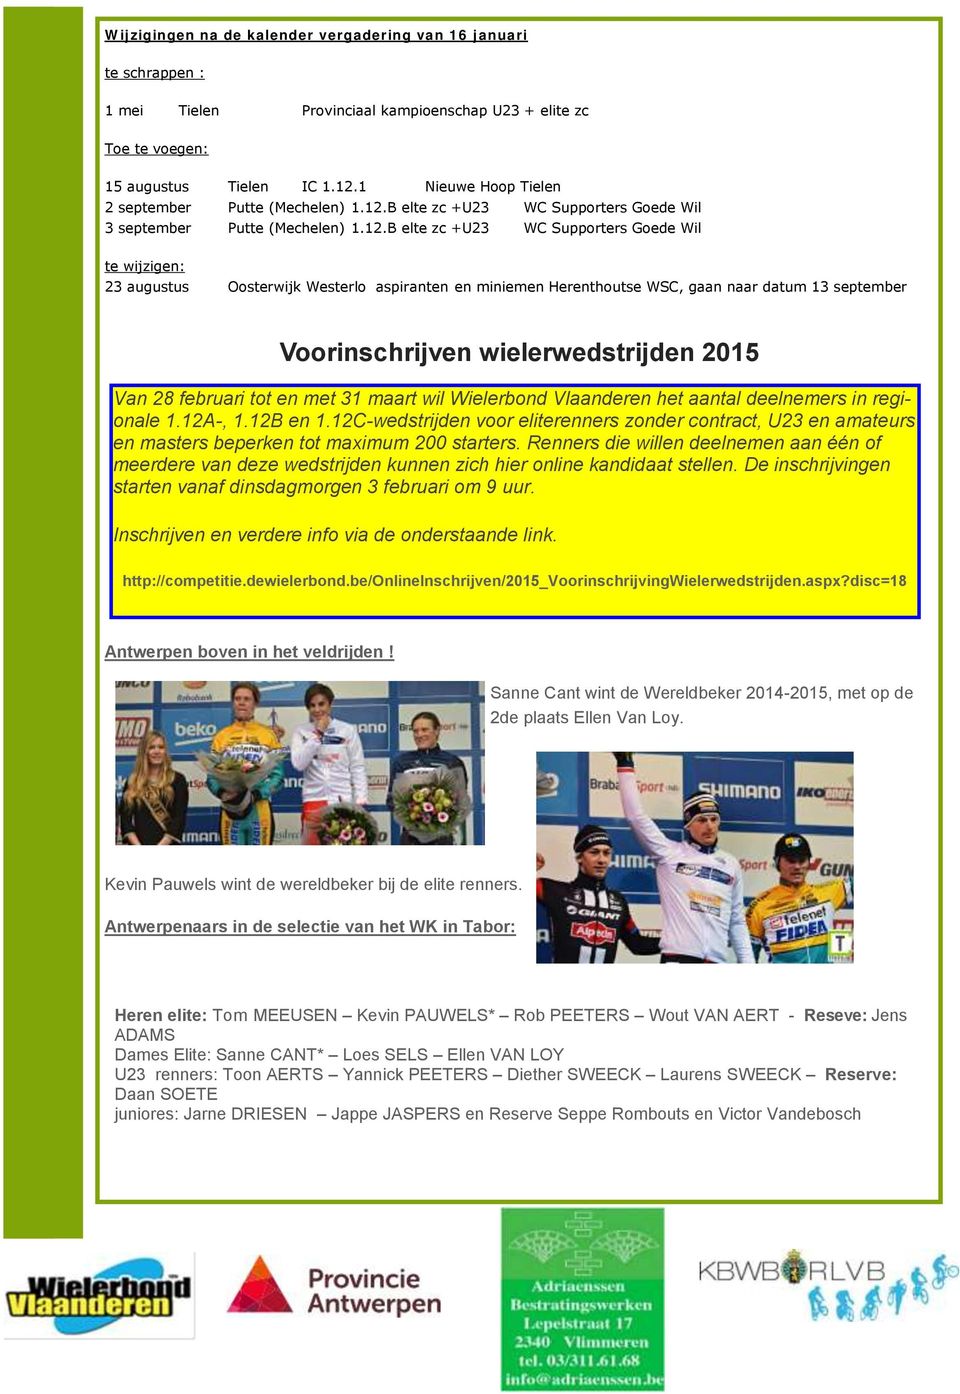 B elte zc +U23 WC Supporters Goede Wil 3 september Putte (Mechelen) 1.12.